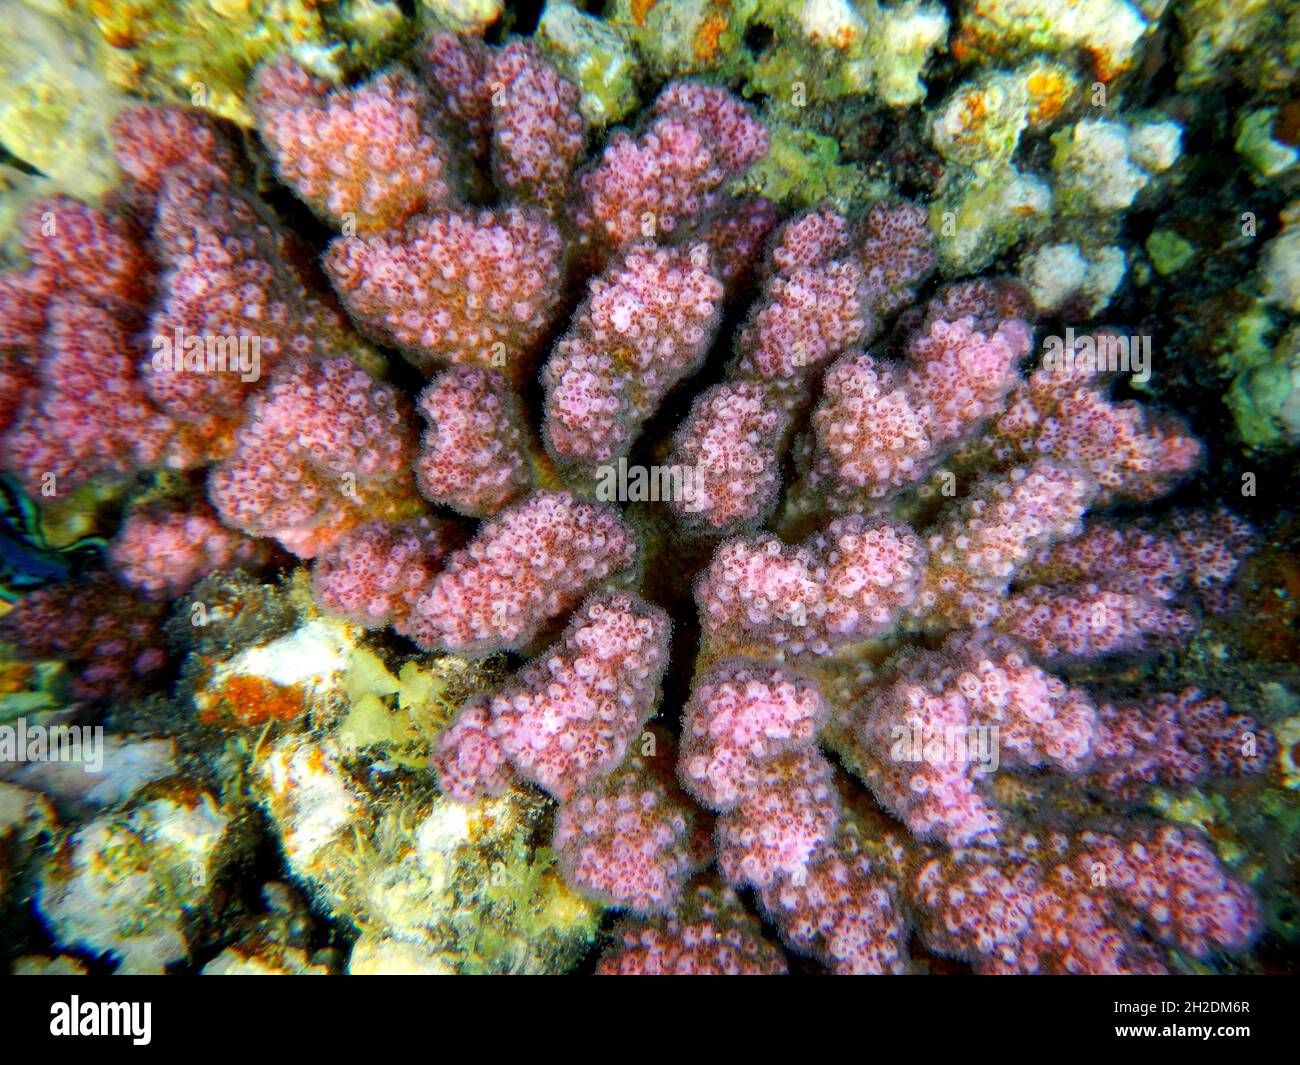 Himbeerkoralle oder Buschkoralle / Cauliflower coral / Pocillopora damicornis Stock Photo